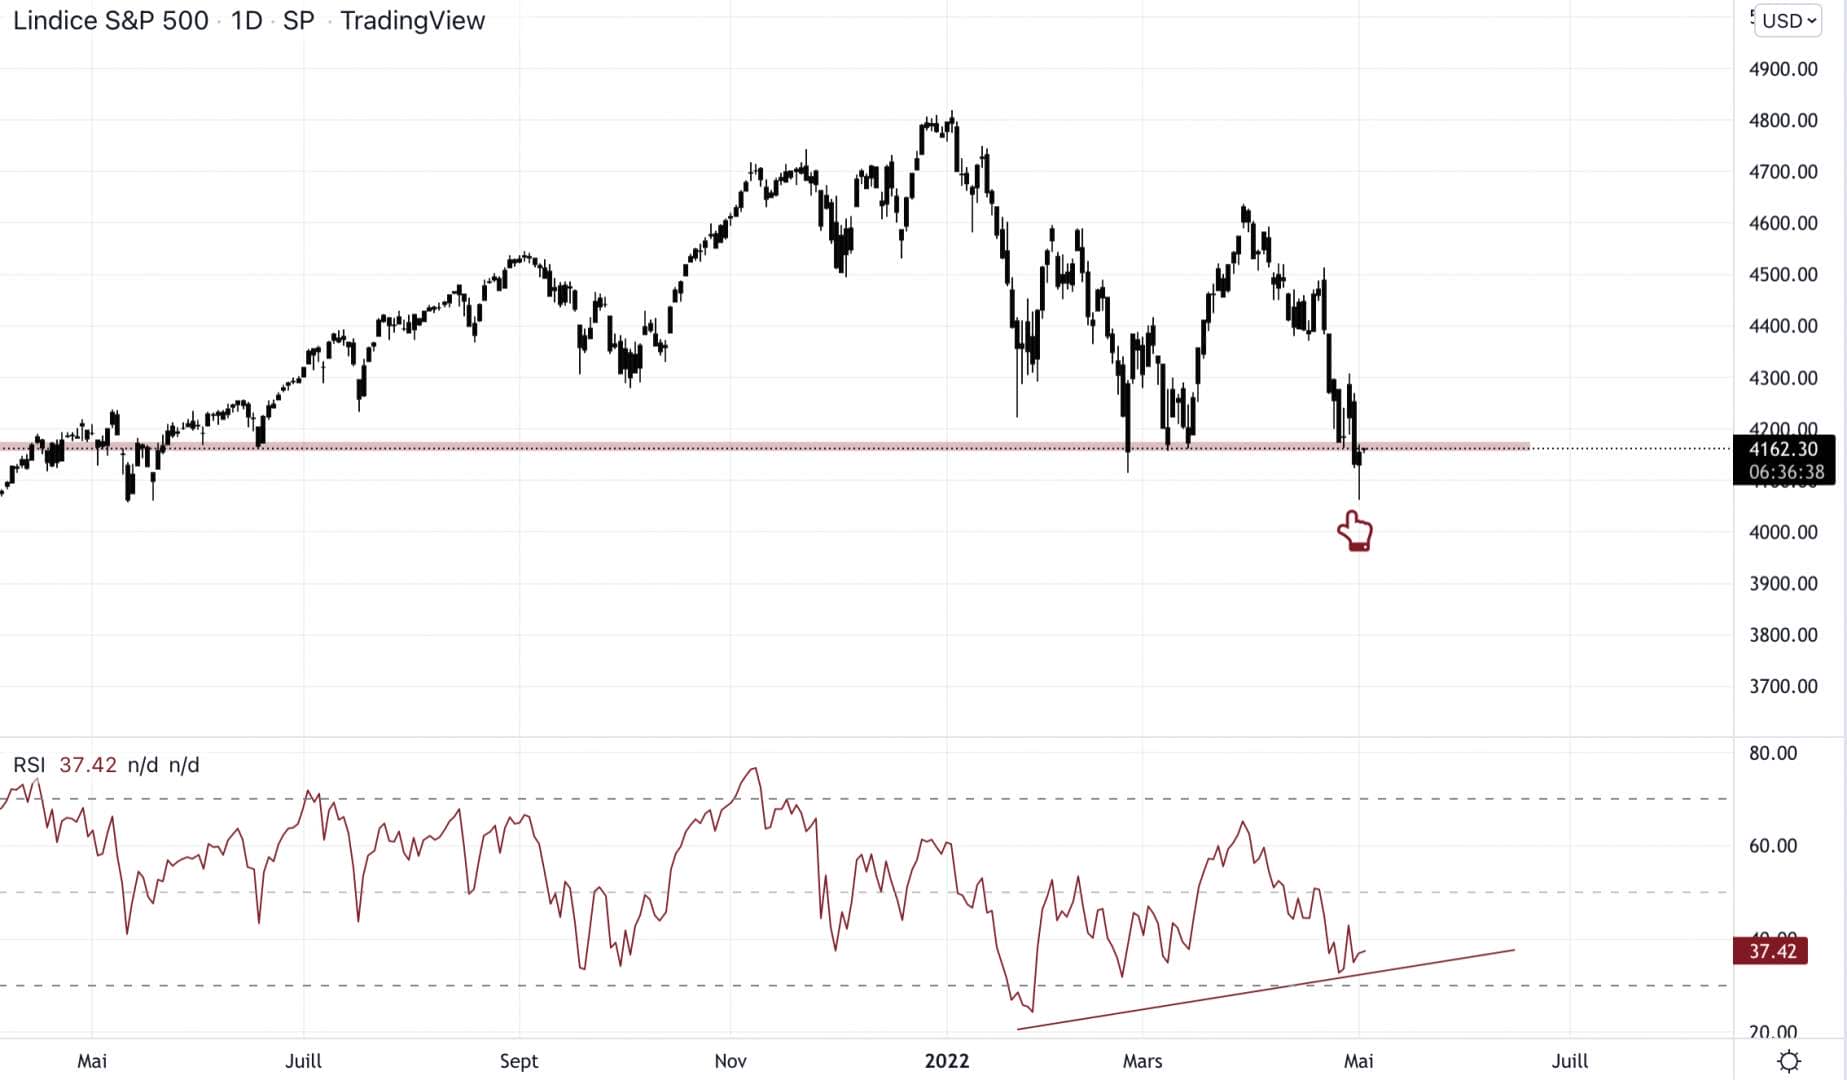 Le S&P 500 est peut être en train de perde le support. Il faut vite réagir.